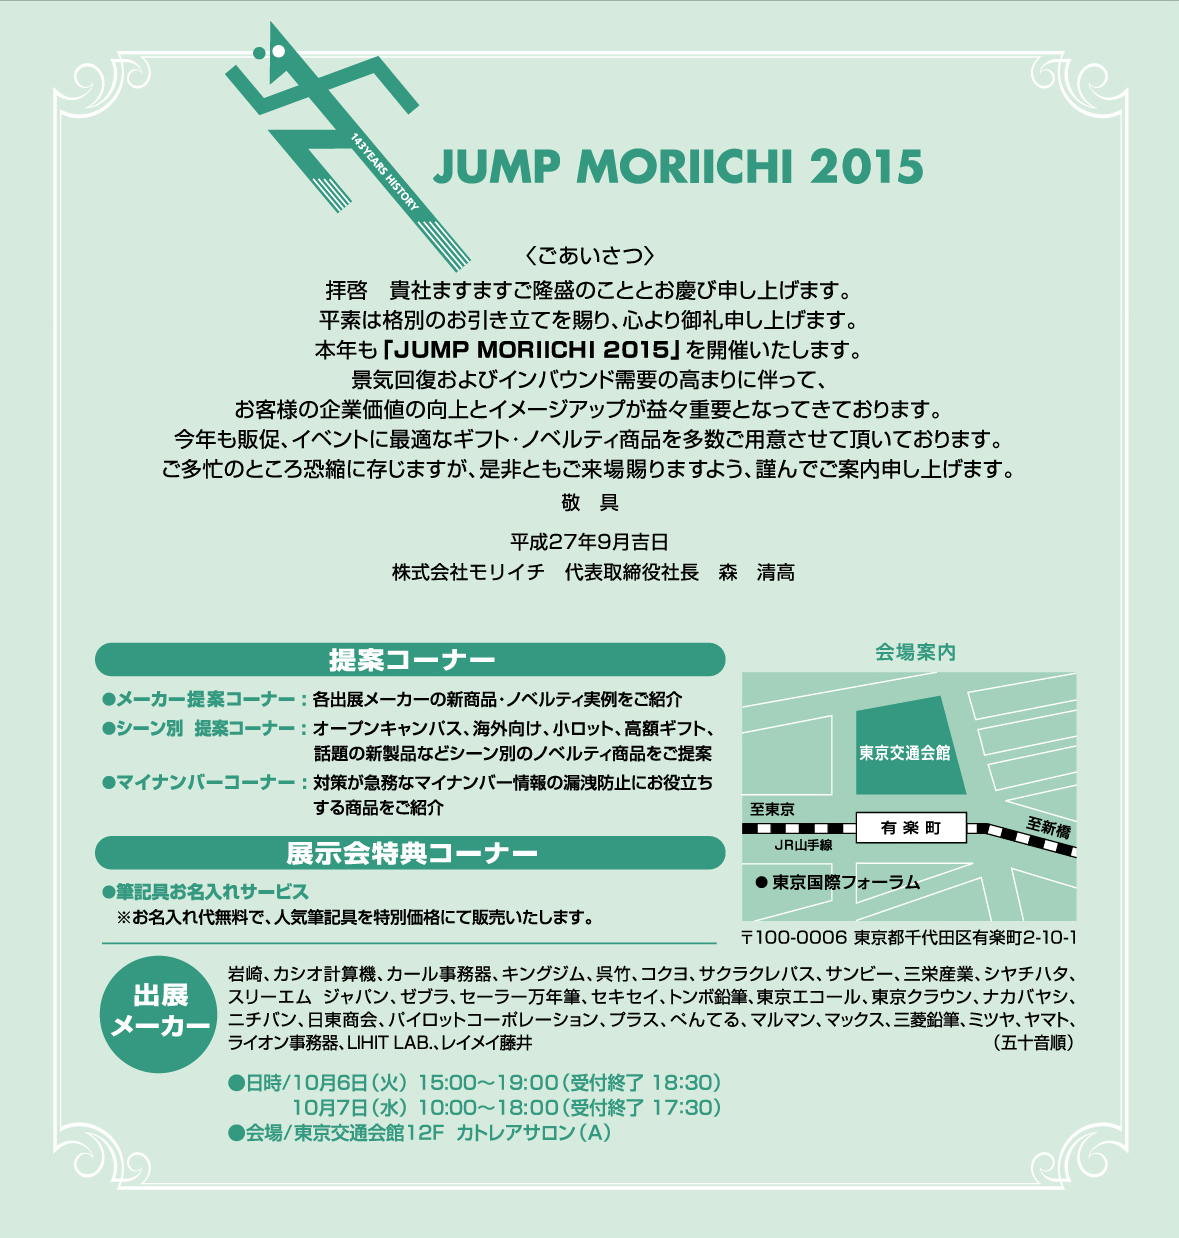 ギフト ノベルティ展示会 Jump Moriichi 15 開催のお知らせ 株式会社モリイチ